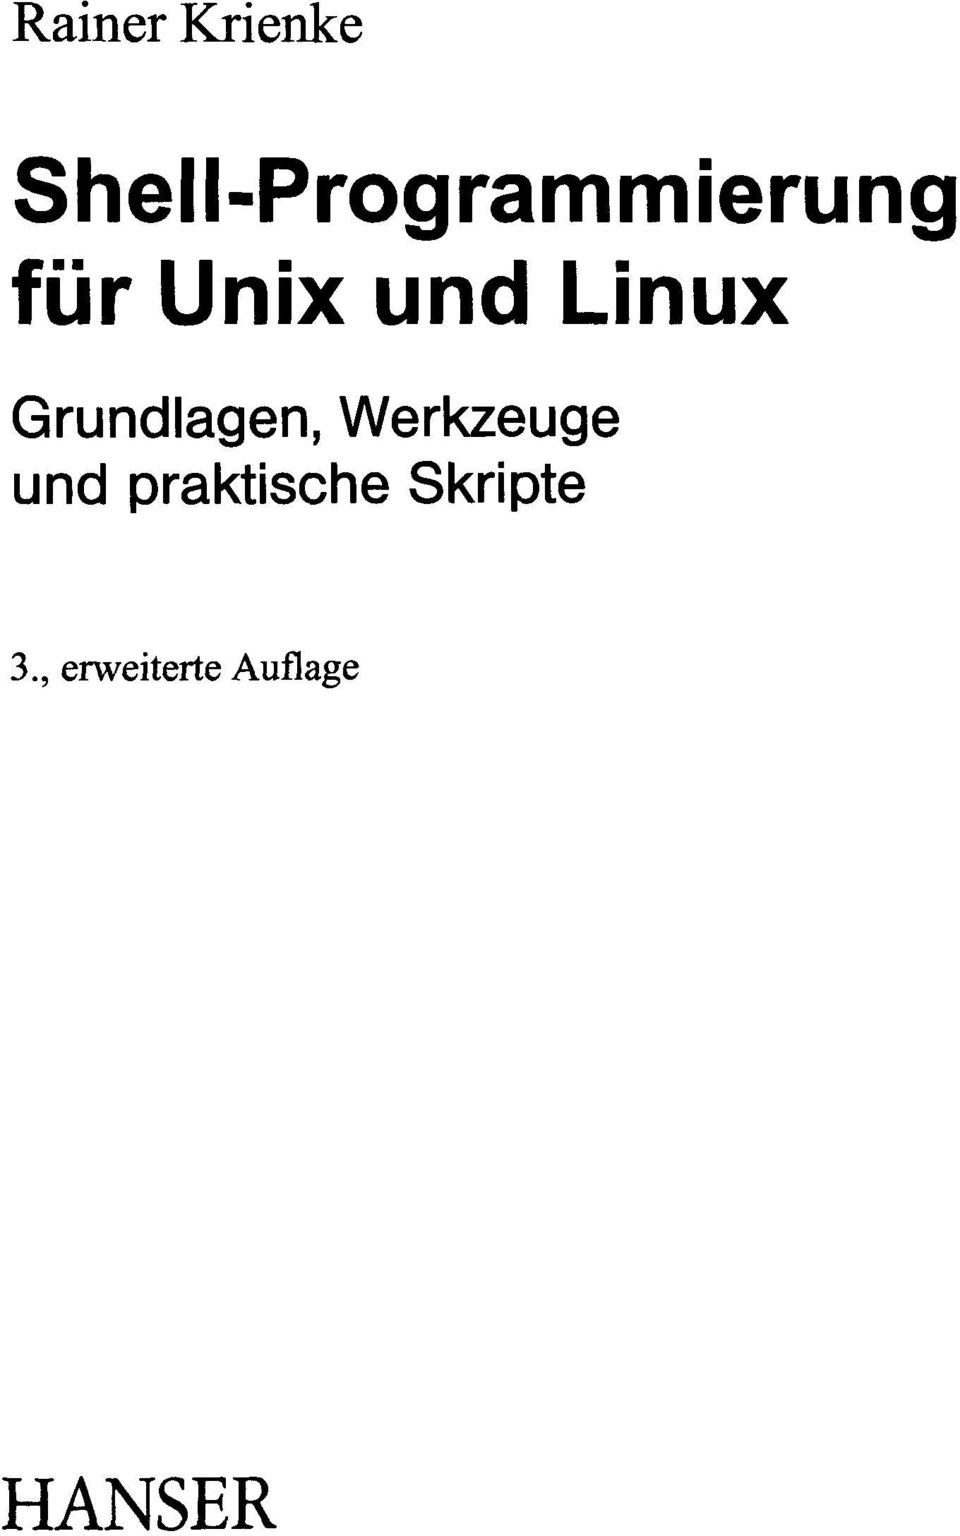 und Linux Grundlagen, Werkzeuge